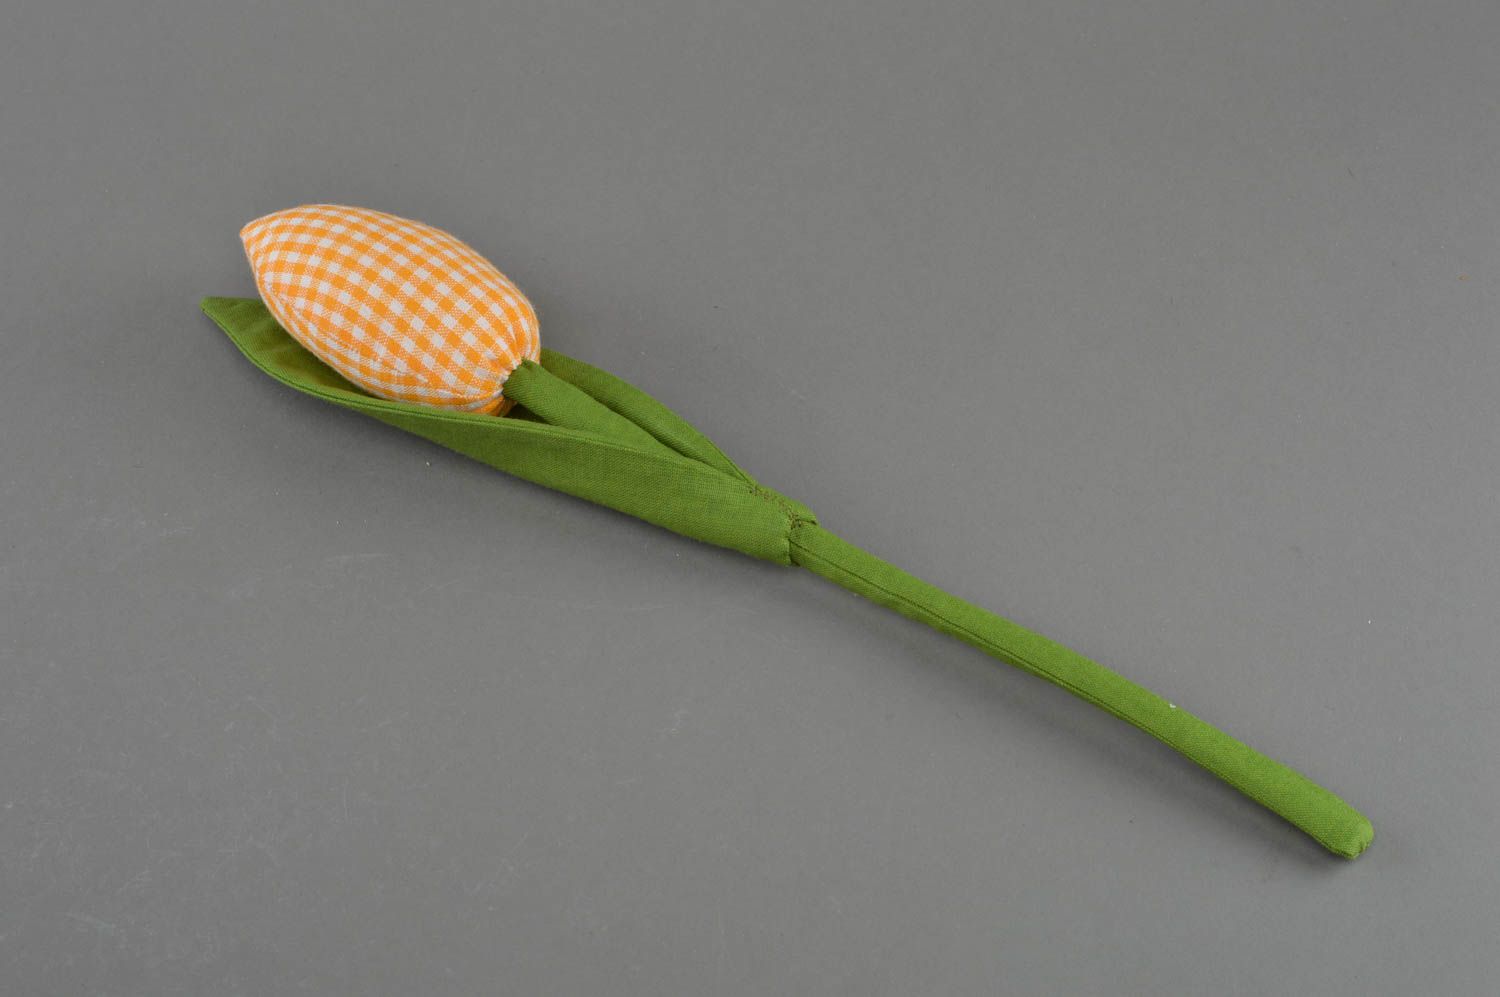 Тканевый тюльпан из хлопка мягкий для декора ручной работы желтый в клеточку фото 1